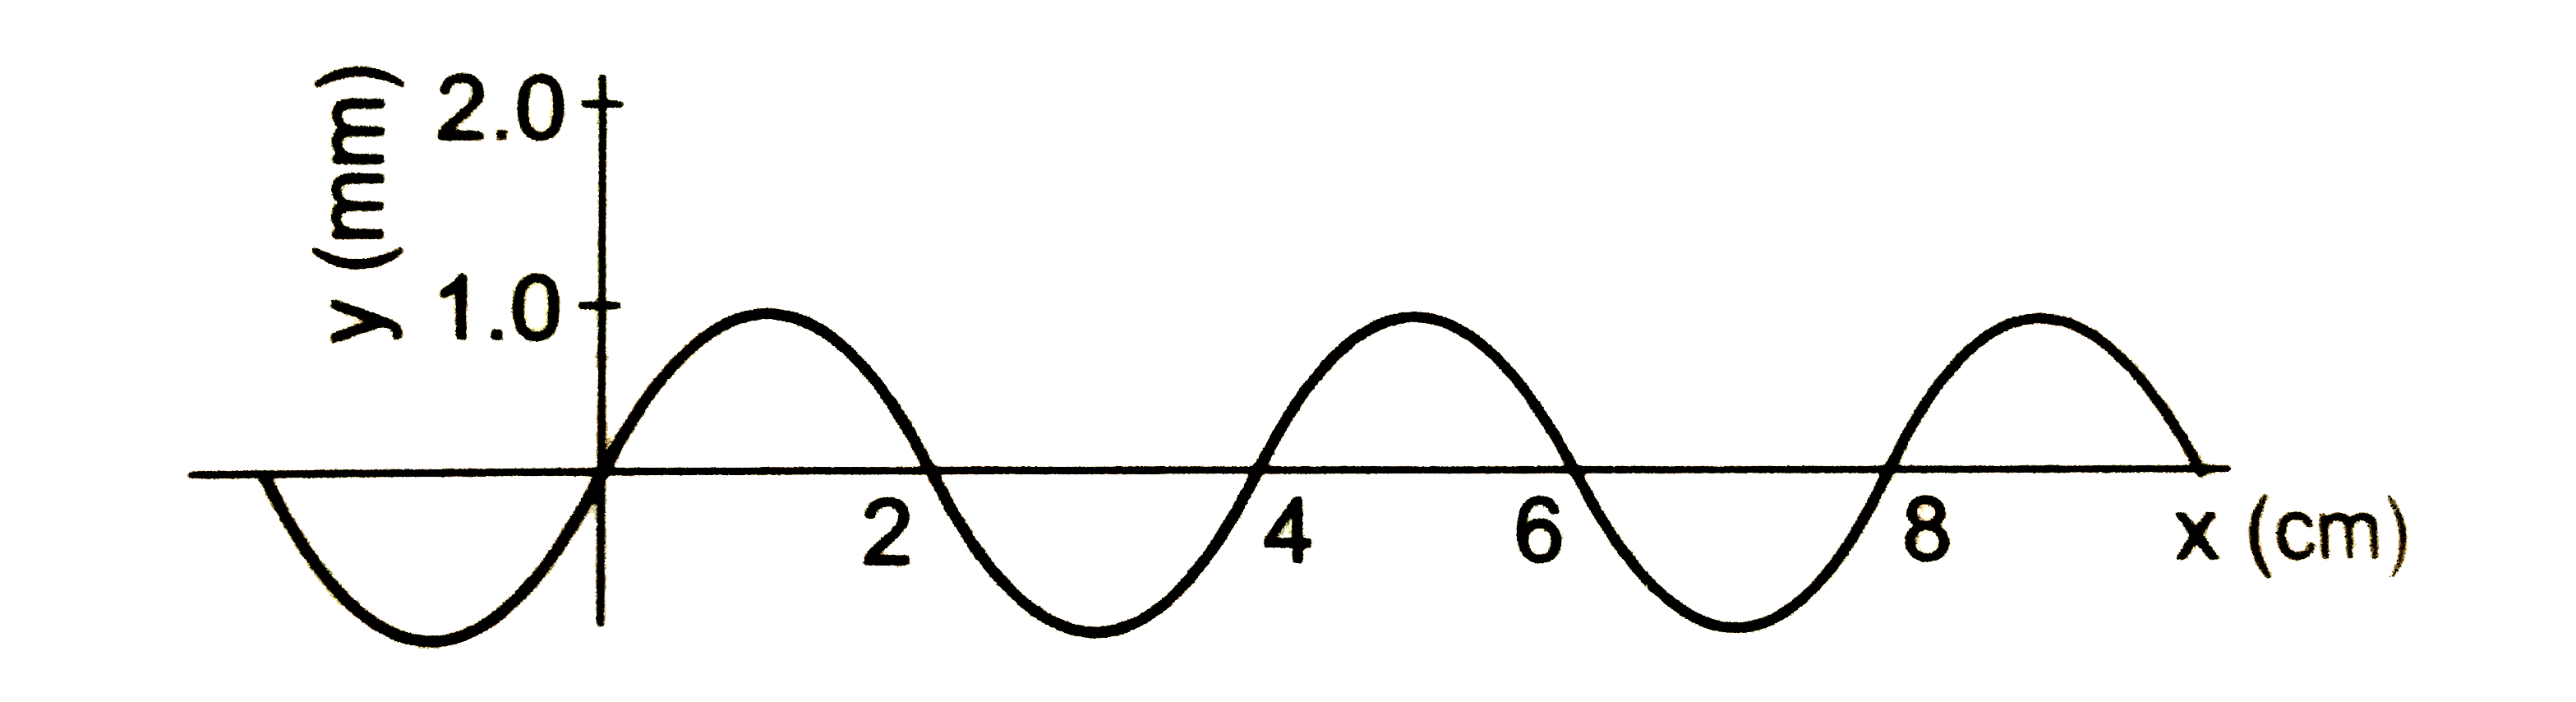 x-अक्ष के अनुदिश तनी हुई डोरी पर 20 cm//s की चाल से एक तरंग धनात्मक दिशा में चल रही है । चित्र में समय t = 0 पर इस डोरी के कणों के विस्थापन दिखाए गए हैं । ज्ञात करें (a)आयाम (b) तरंगदैर्ध्य तथा (c ) तरंग संख्या (wave number 1//lambda) (d) तरंग की आवृत्ति ।